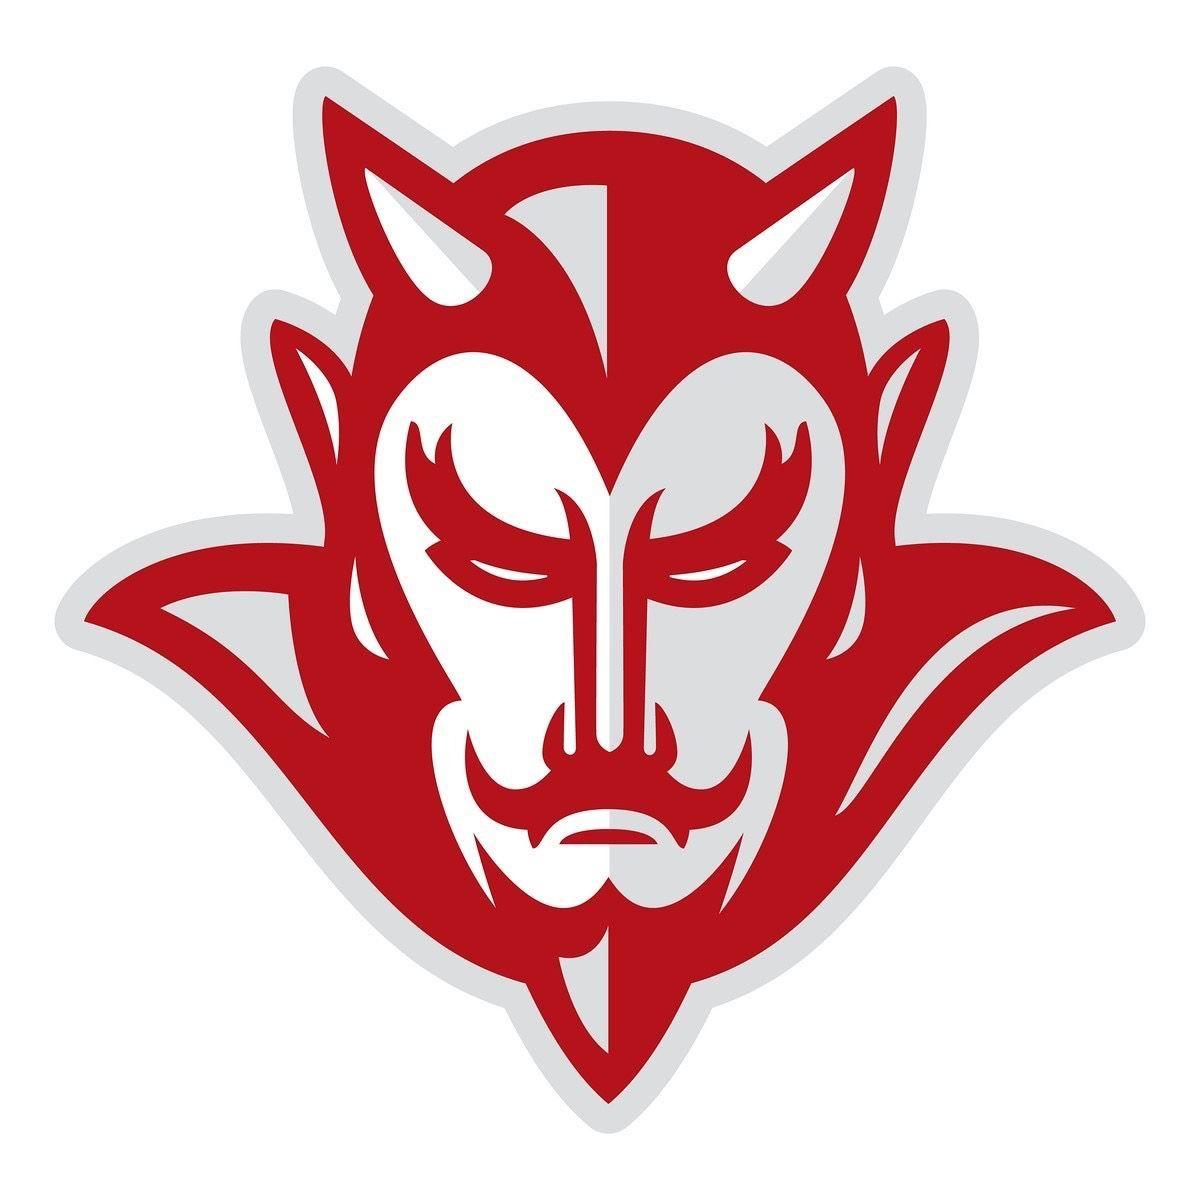 Red Devils Football Logo - Atkins Red Devils - Jesse Hays - Russellville, Arkansas - Football ...